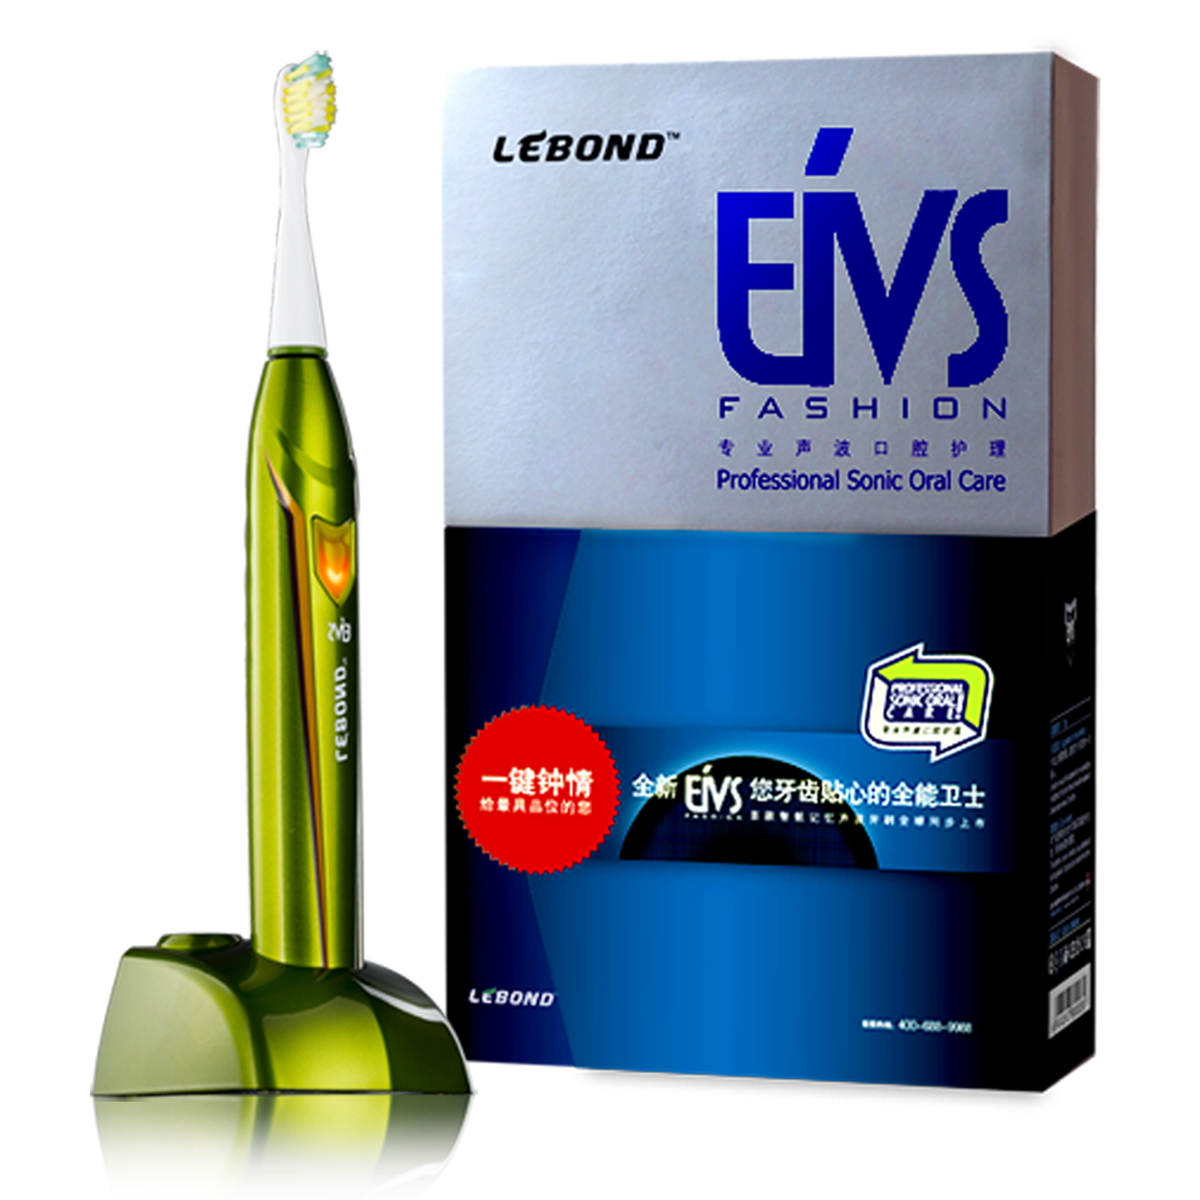 【包邮】lebond力博得 充电式声波电动牙刷 EIVS系列橄榄绿